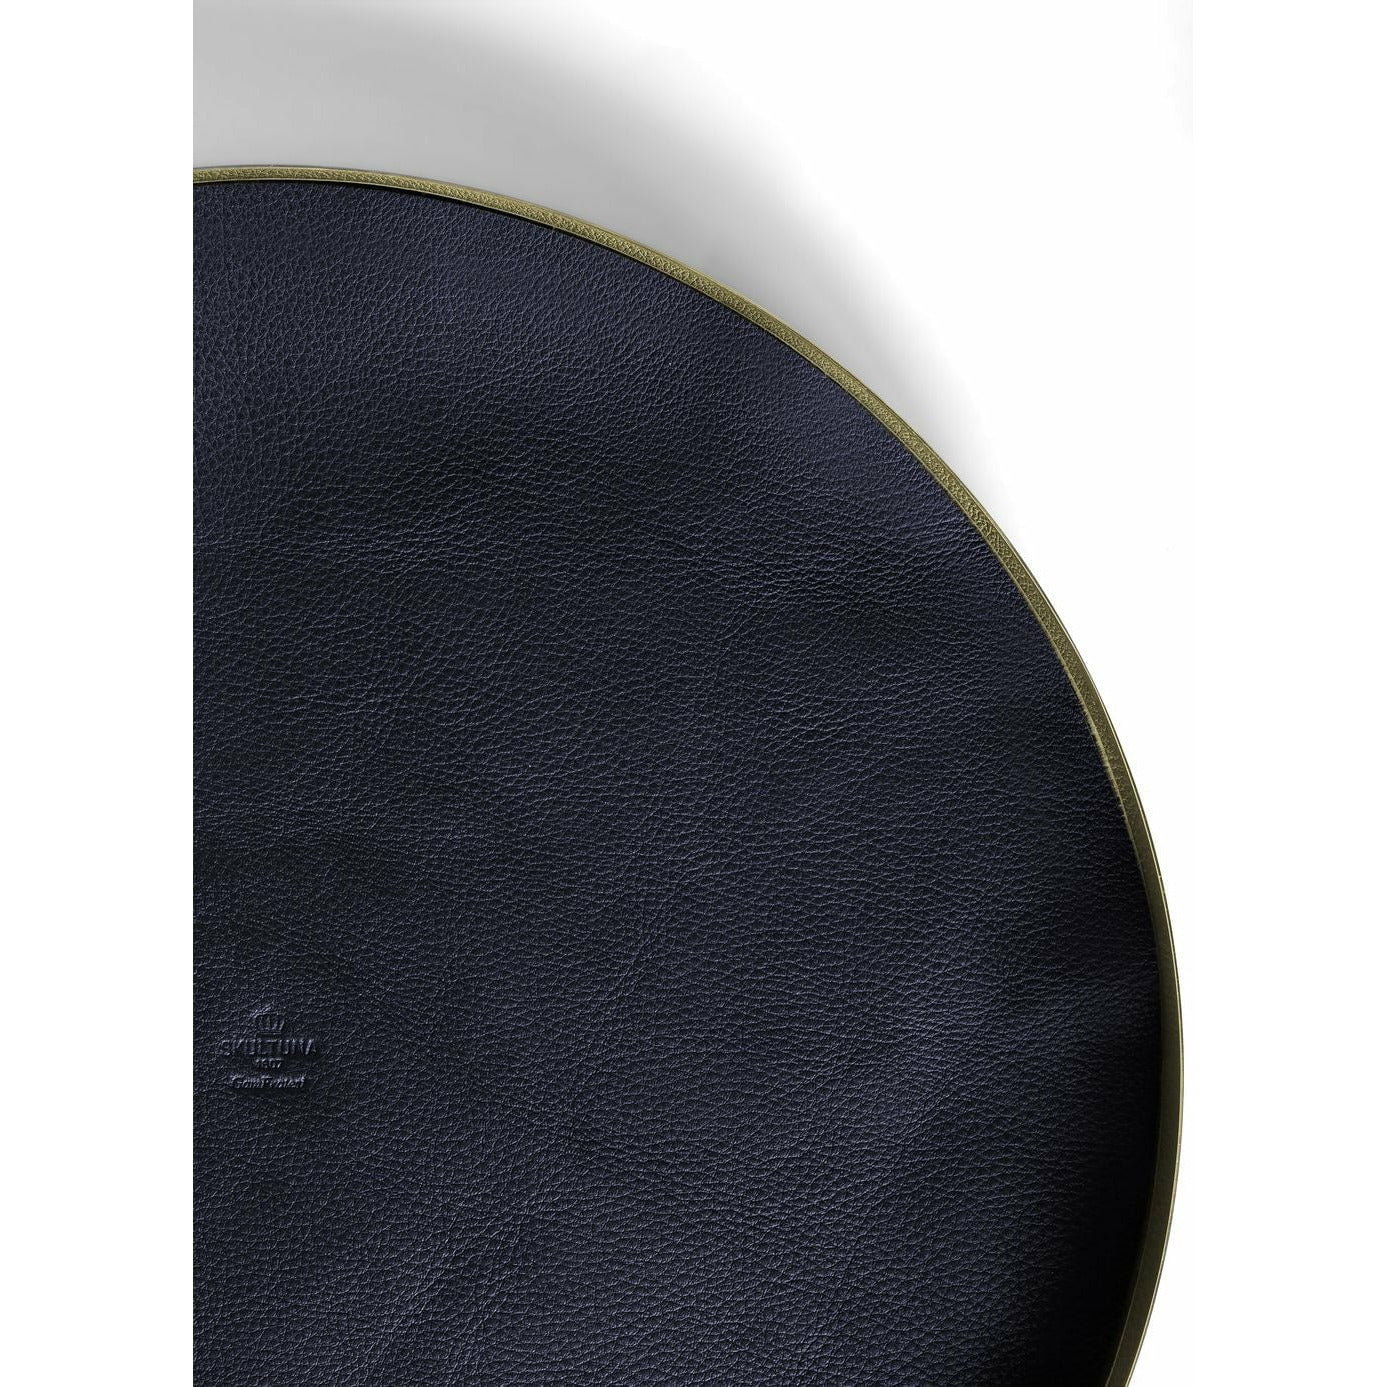 Skultuna Karui Tablett ø34cm, Farbe Blau